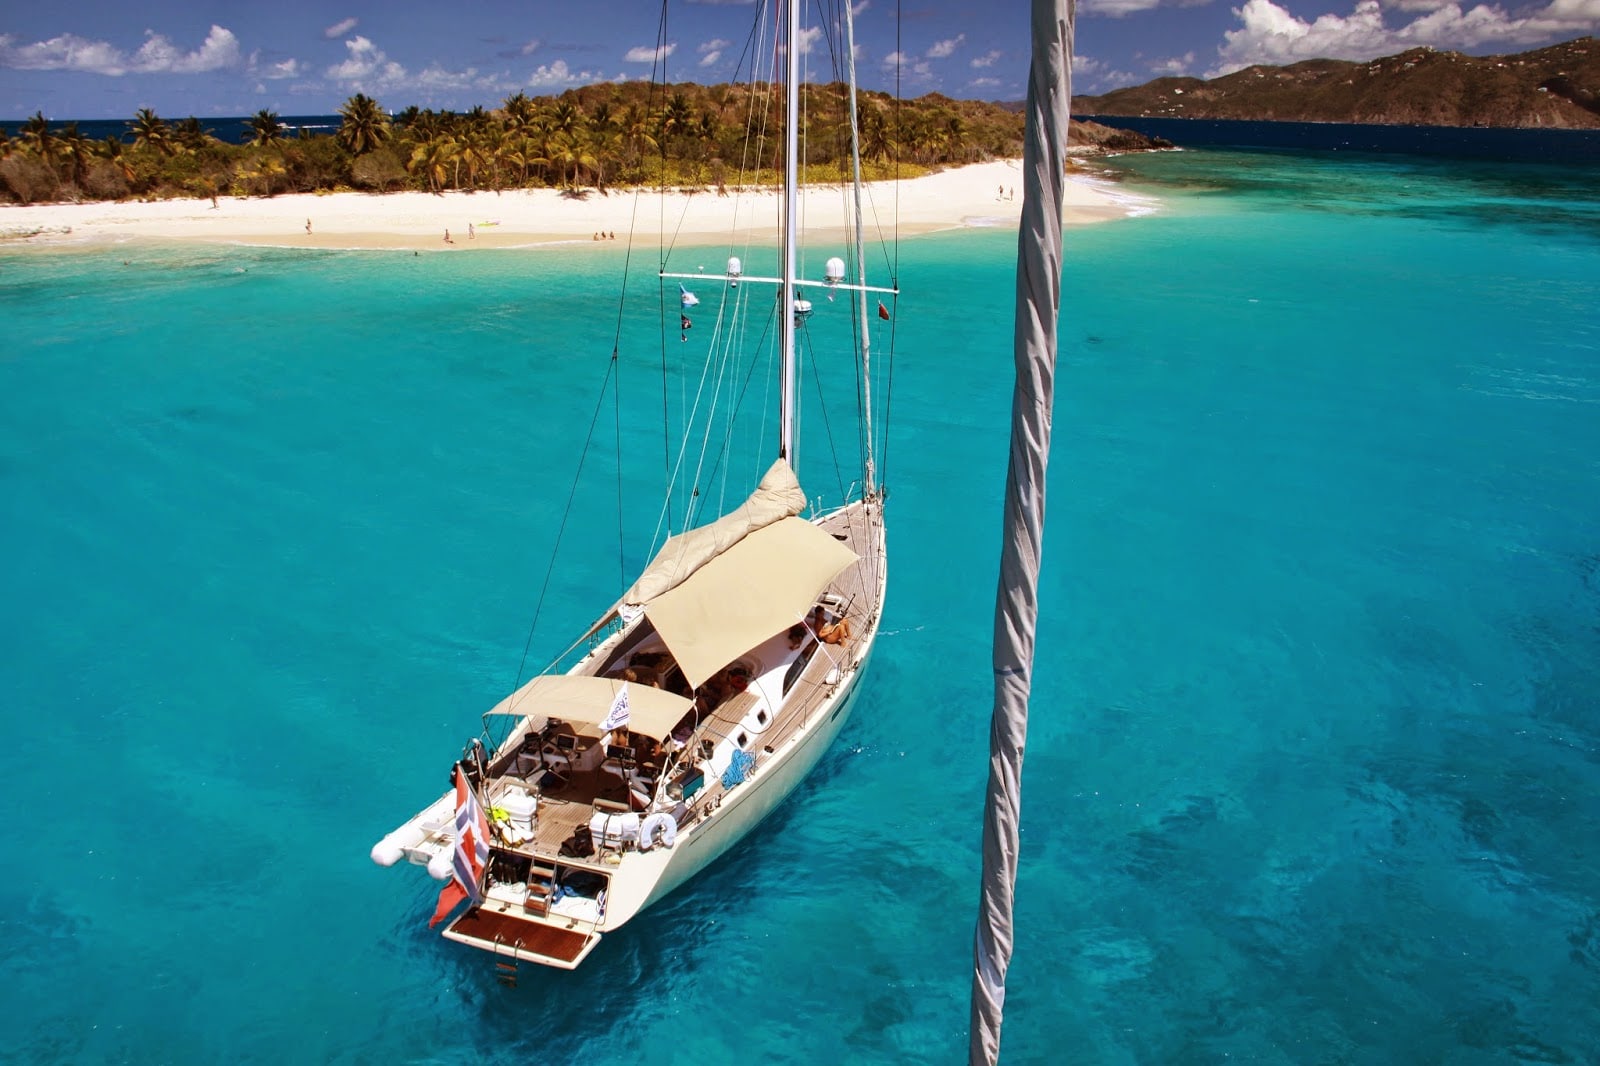 Location bateau Guadeloupe: bons plans location catamaran, voilier pour des excursions aux Caraibes